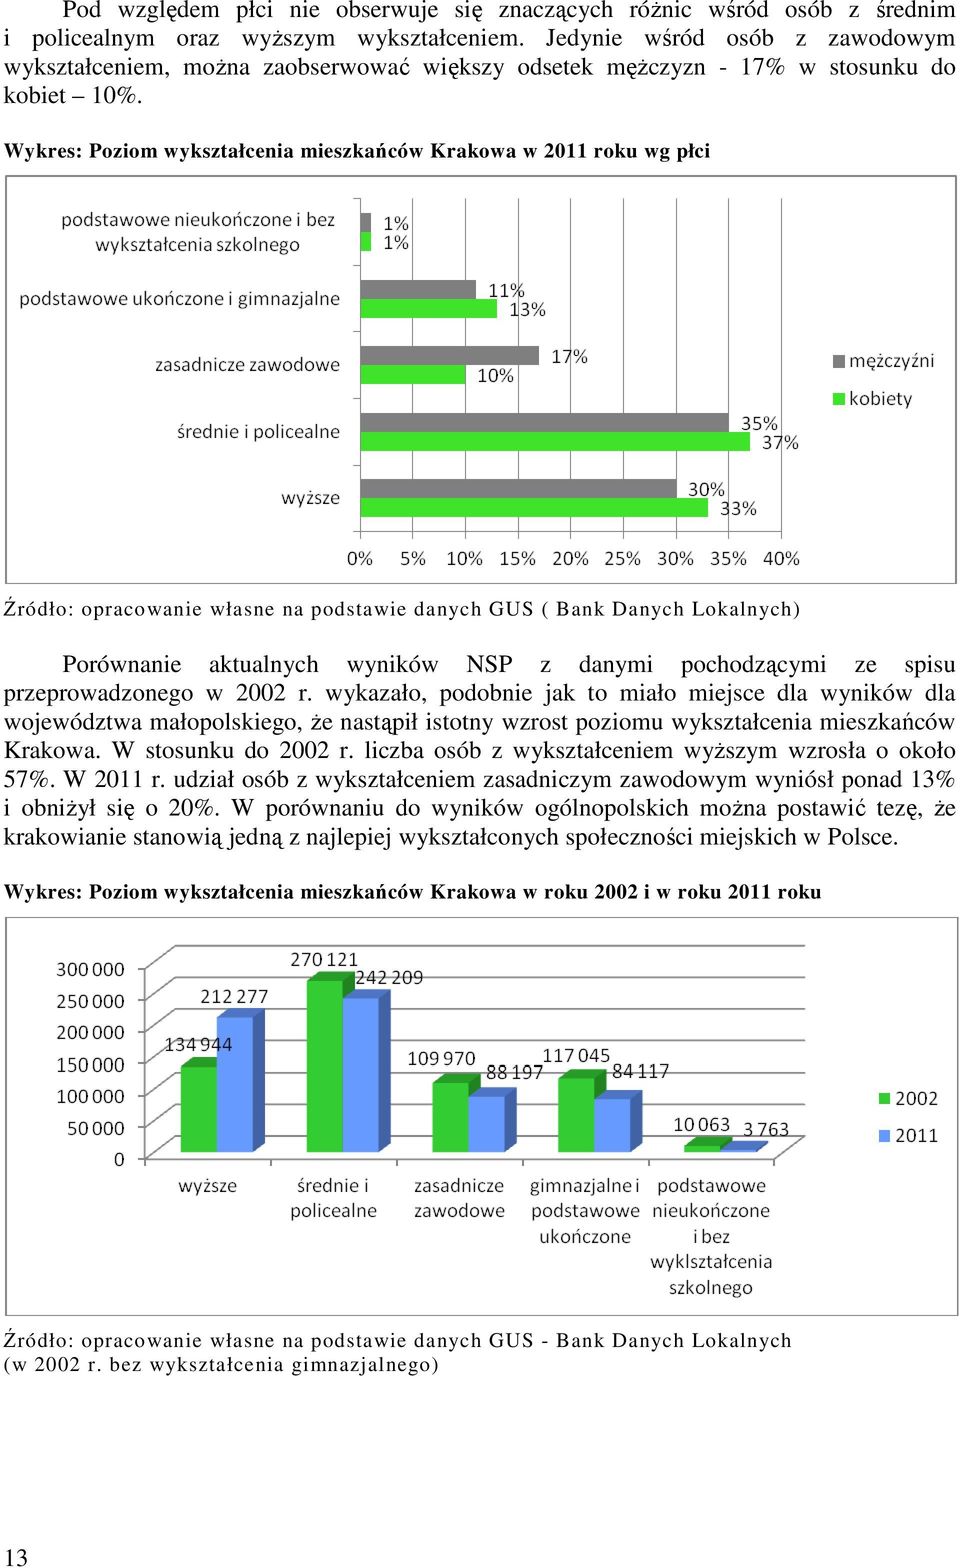 Wykres: Poziom wykształcenia mieszkańców Krakowa w 2011 roku wg płci Źródło: opracowanie własne na podstawie danych GUS ( Bank Danych Lokalnych) Porównanie aktualnych wyników NSP z danymi